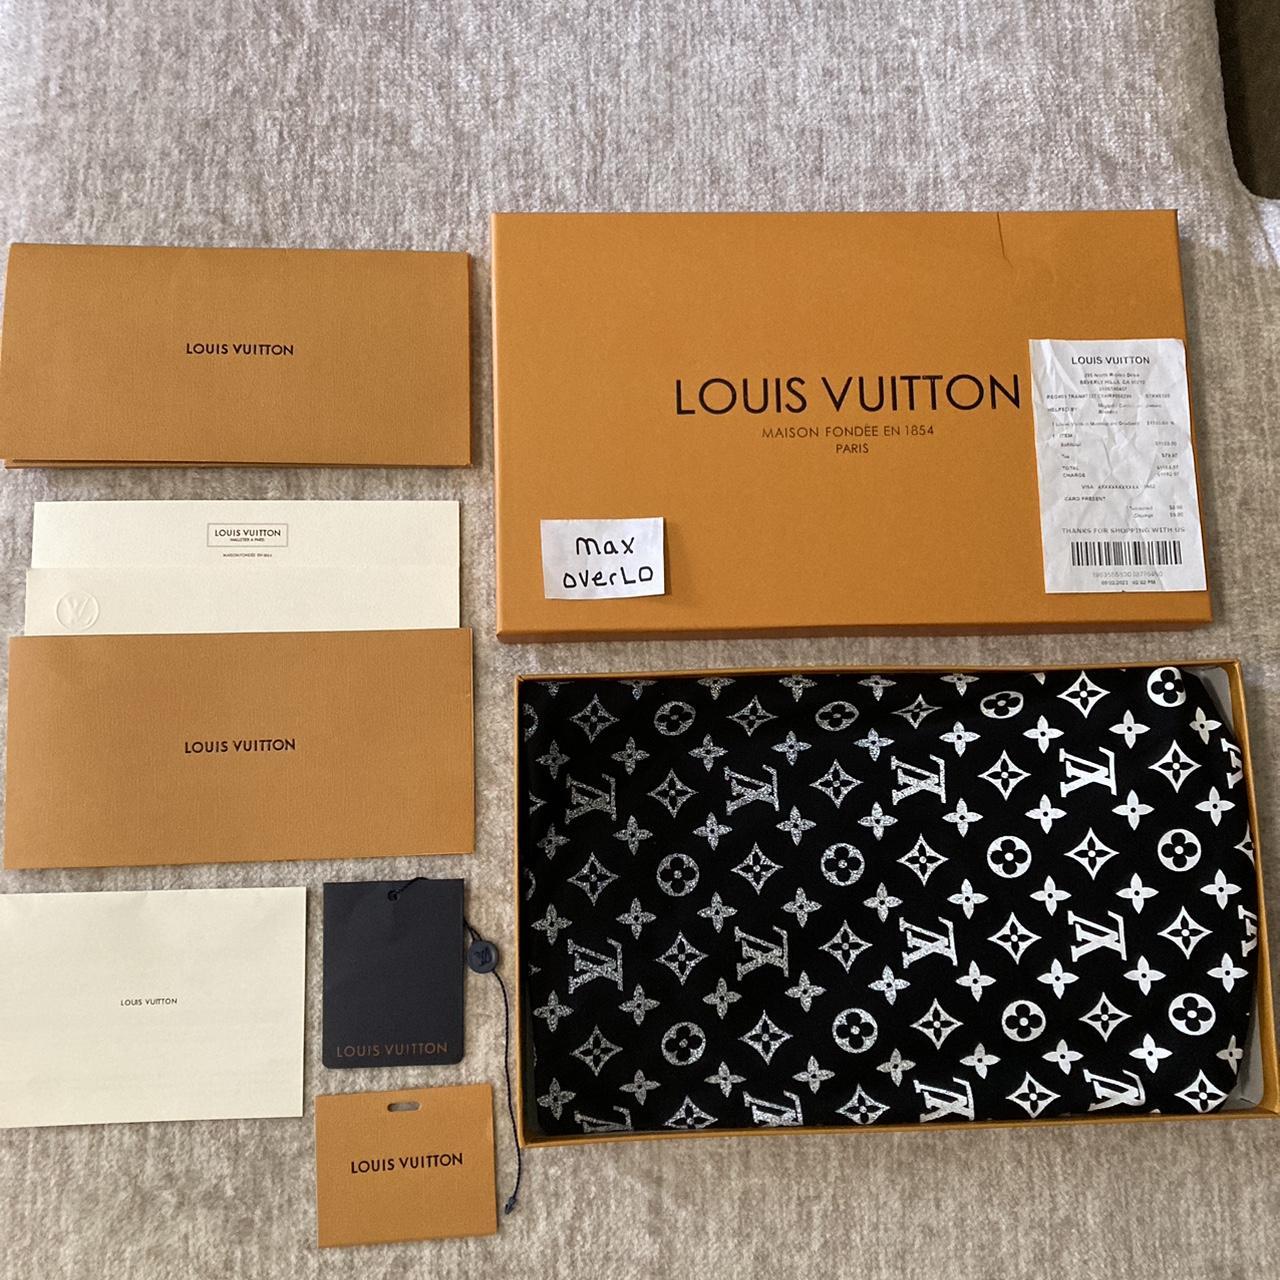 Louis Vuitton Pendant Embroidery T-Shirt Excellent - Depop